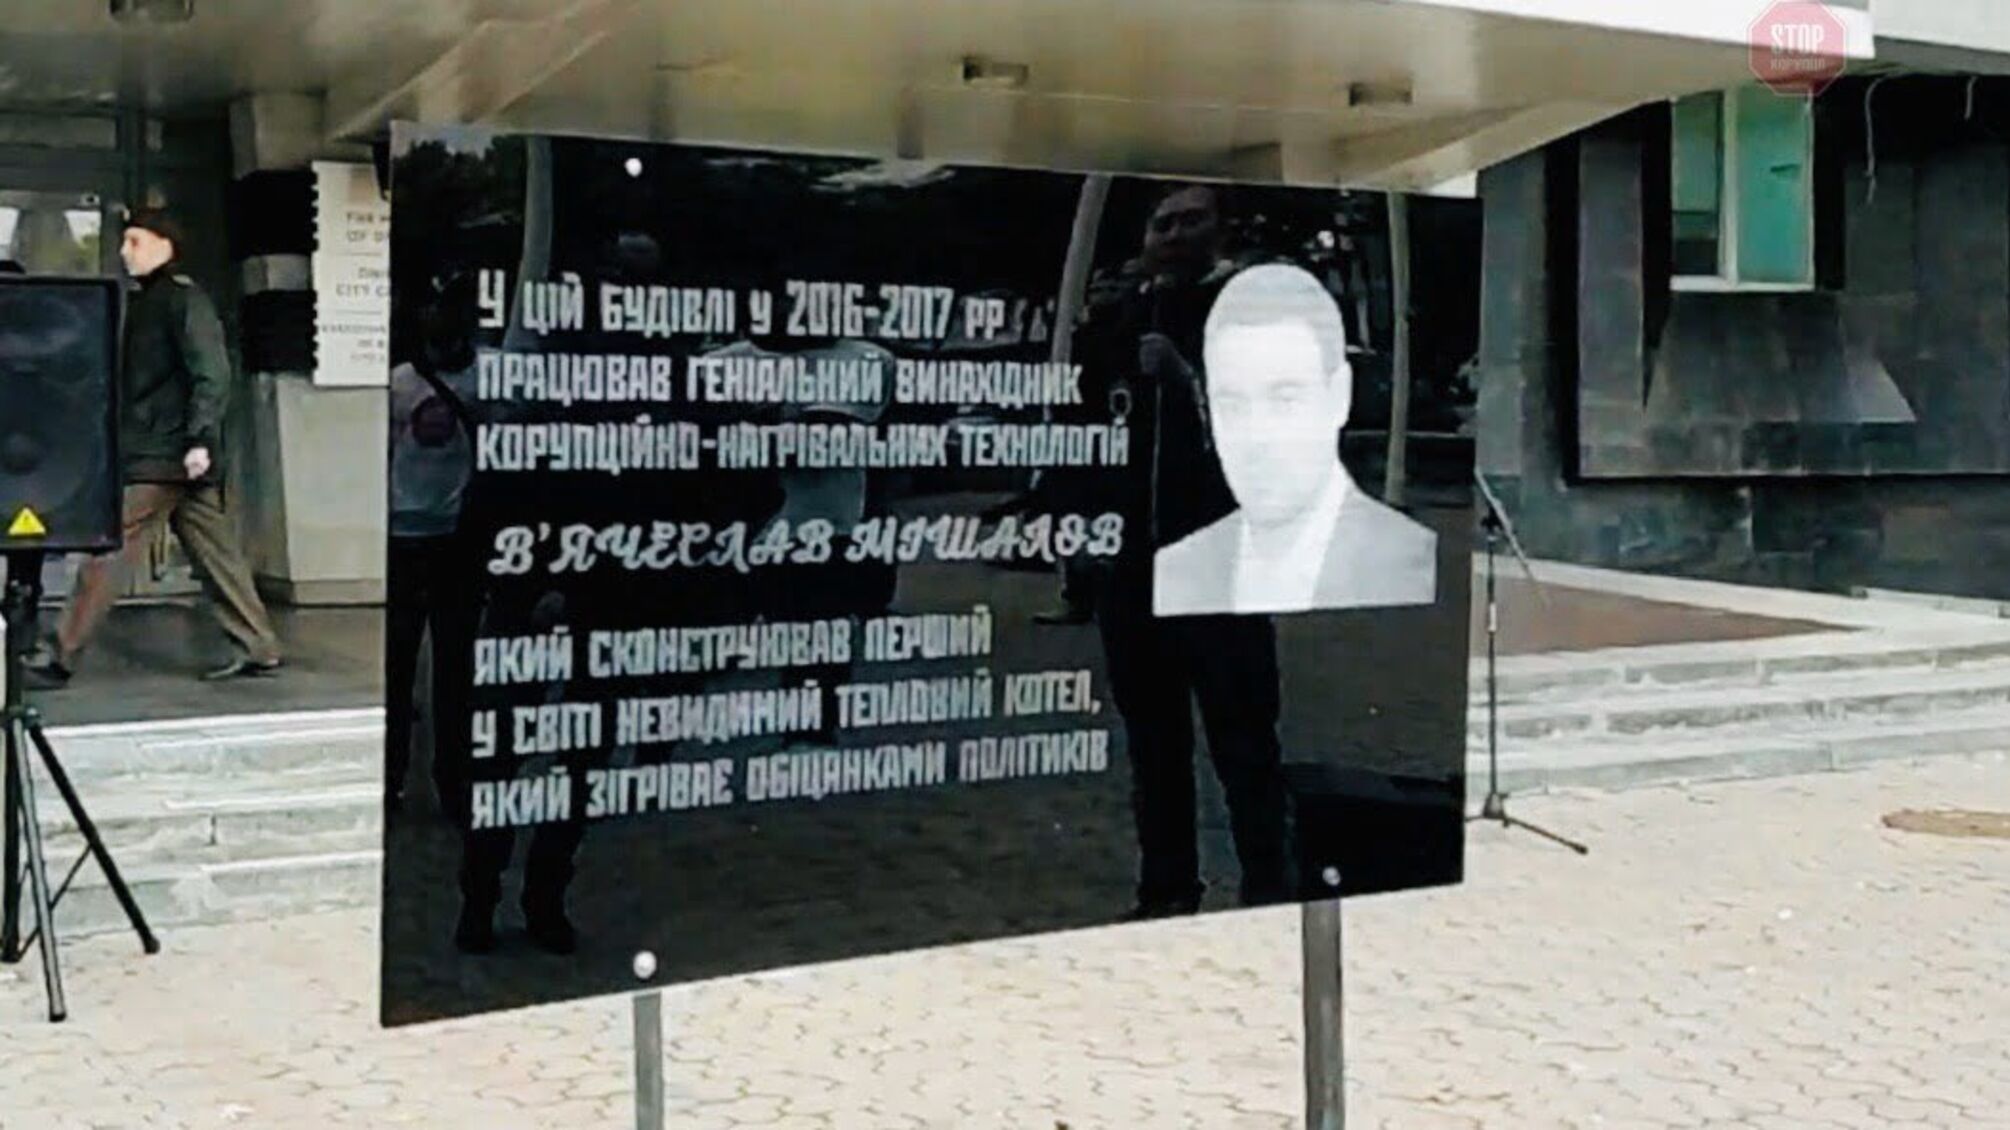 “Геніальному винахіднику невидимого теплового котла”, – у Дніпрі встановили меморіал корупціонеру Мішалову (фото)